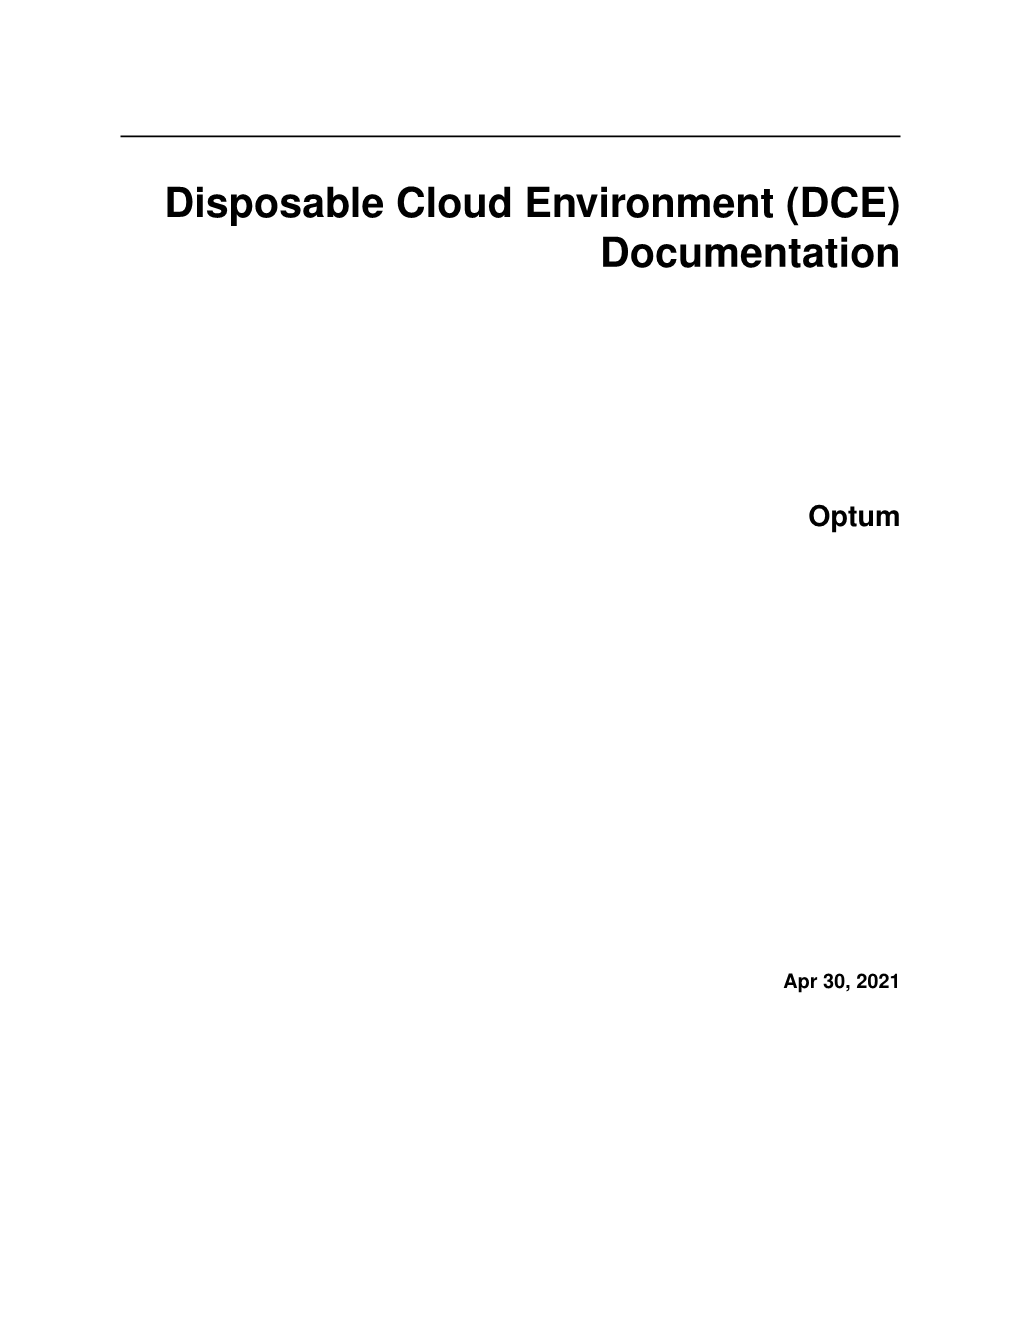 Disposable Cloud Environment (DCE) Documentation